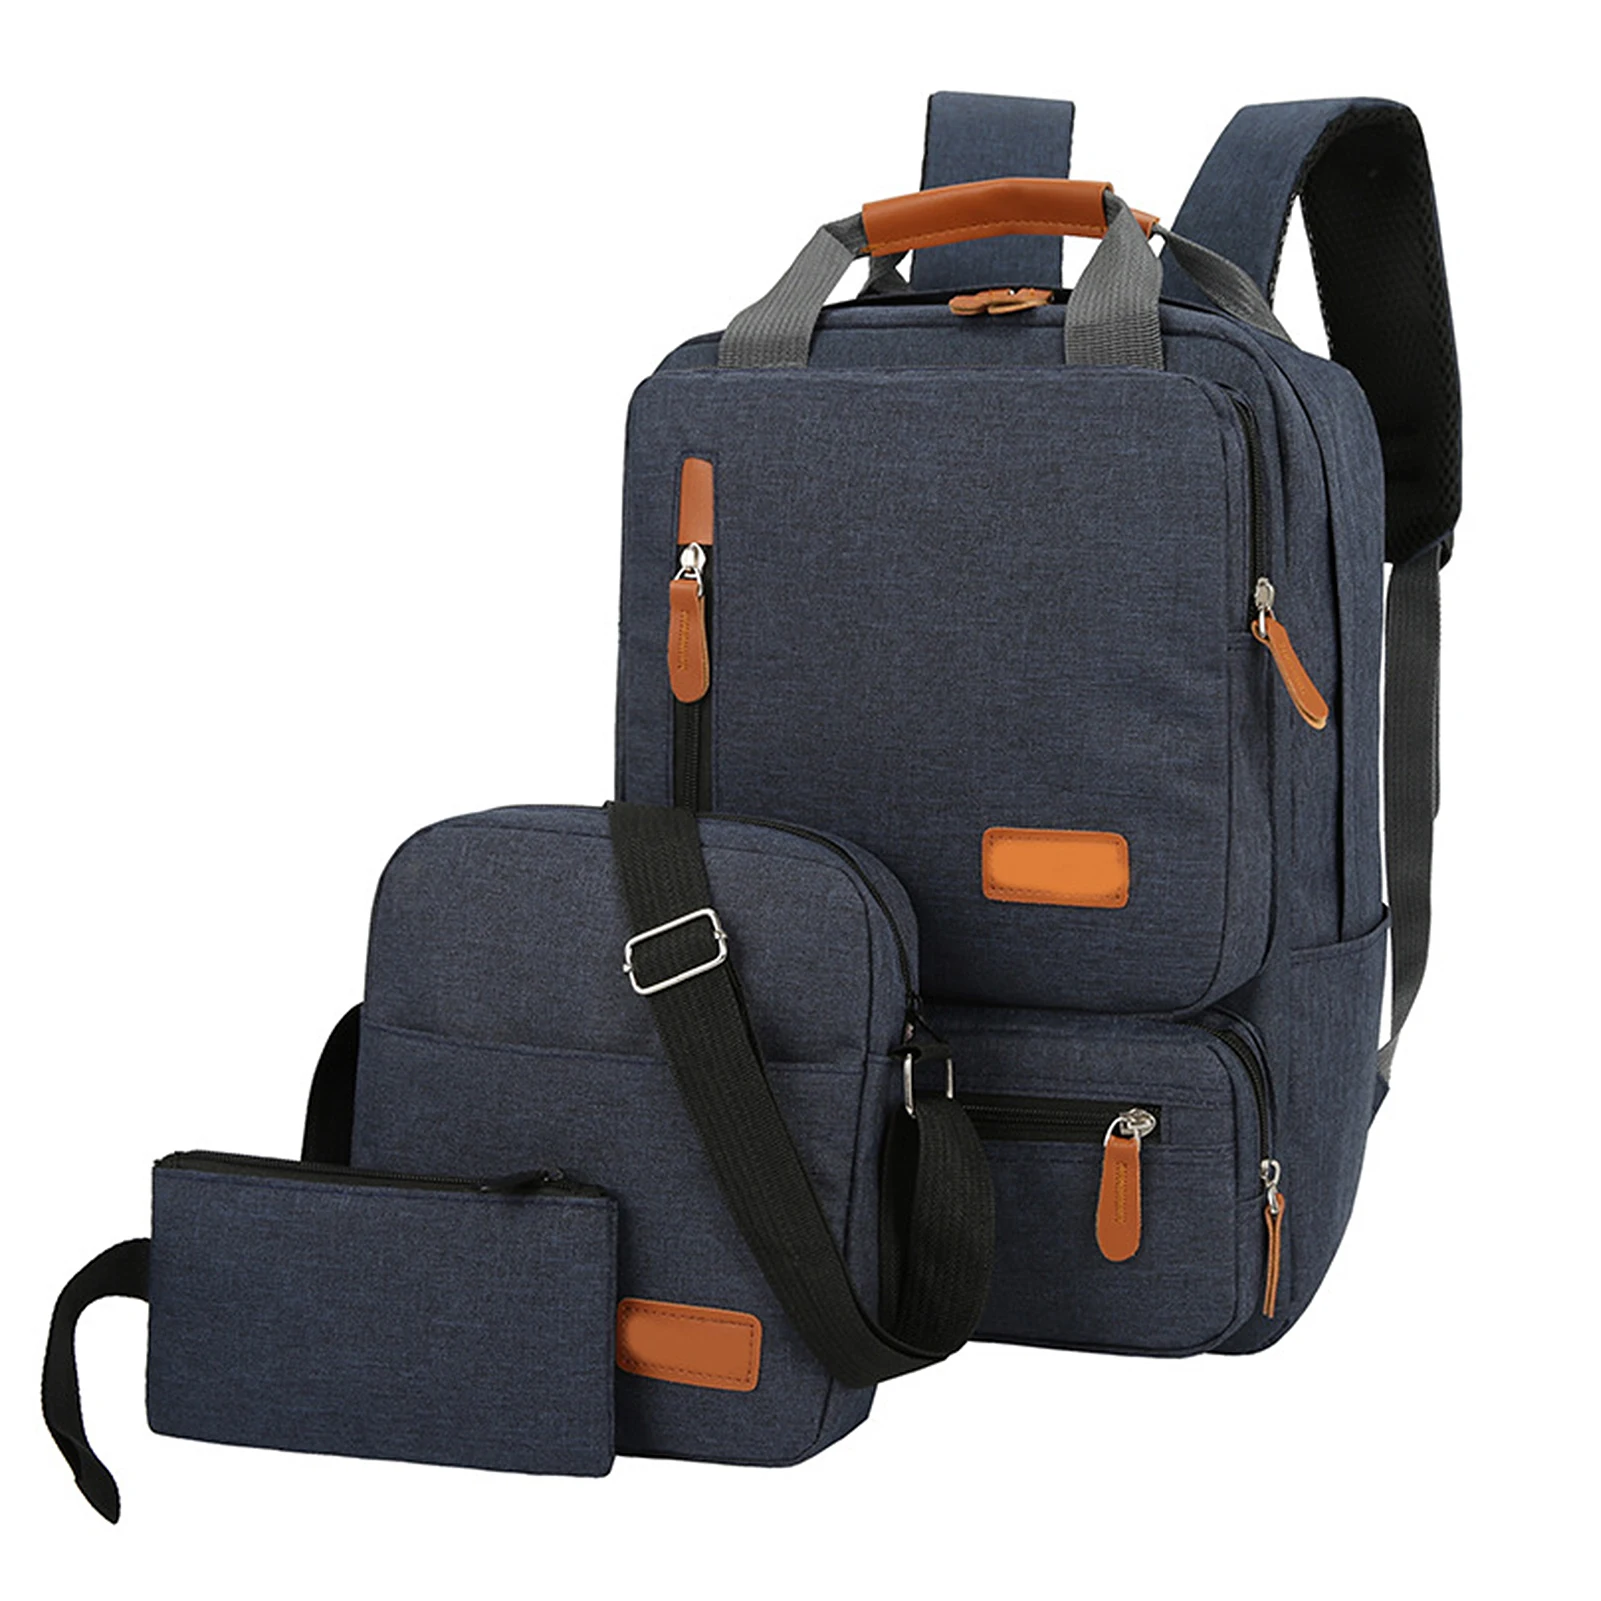 

Travelling Bag Outdoor Backpack Set Women Men Laptop Backpack Shoulder Bag for School Business Work 15inch